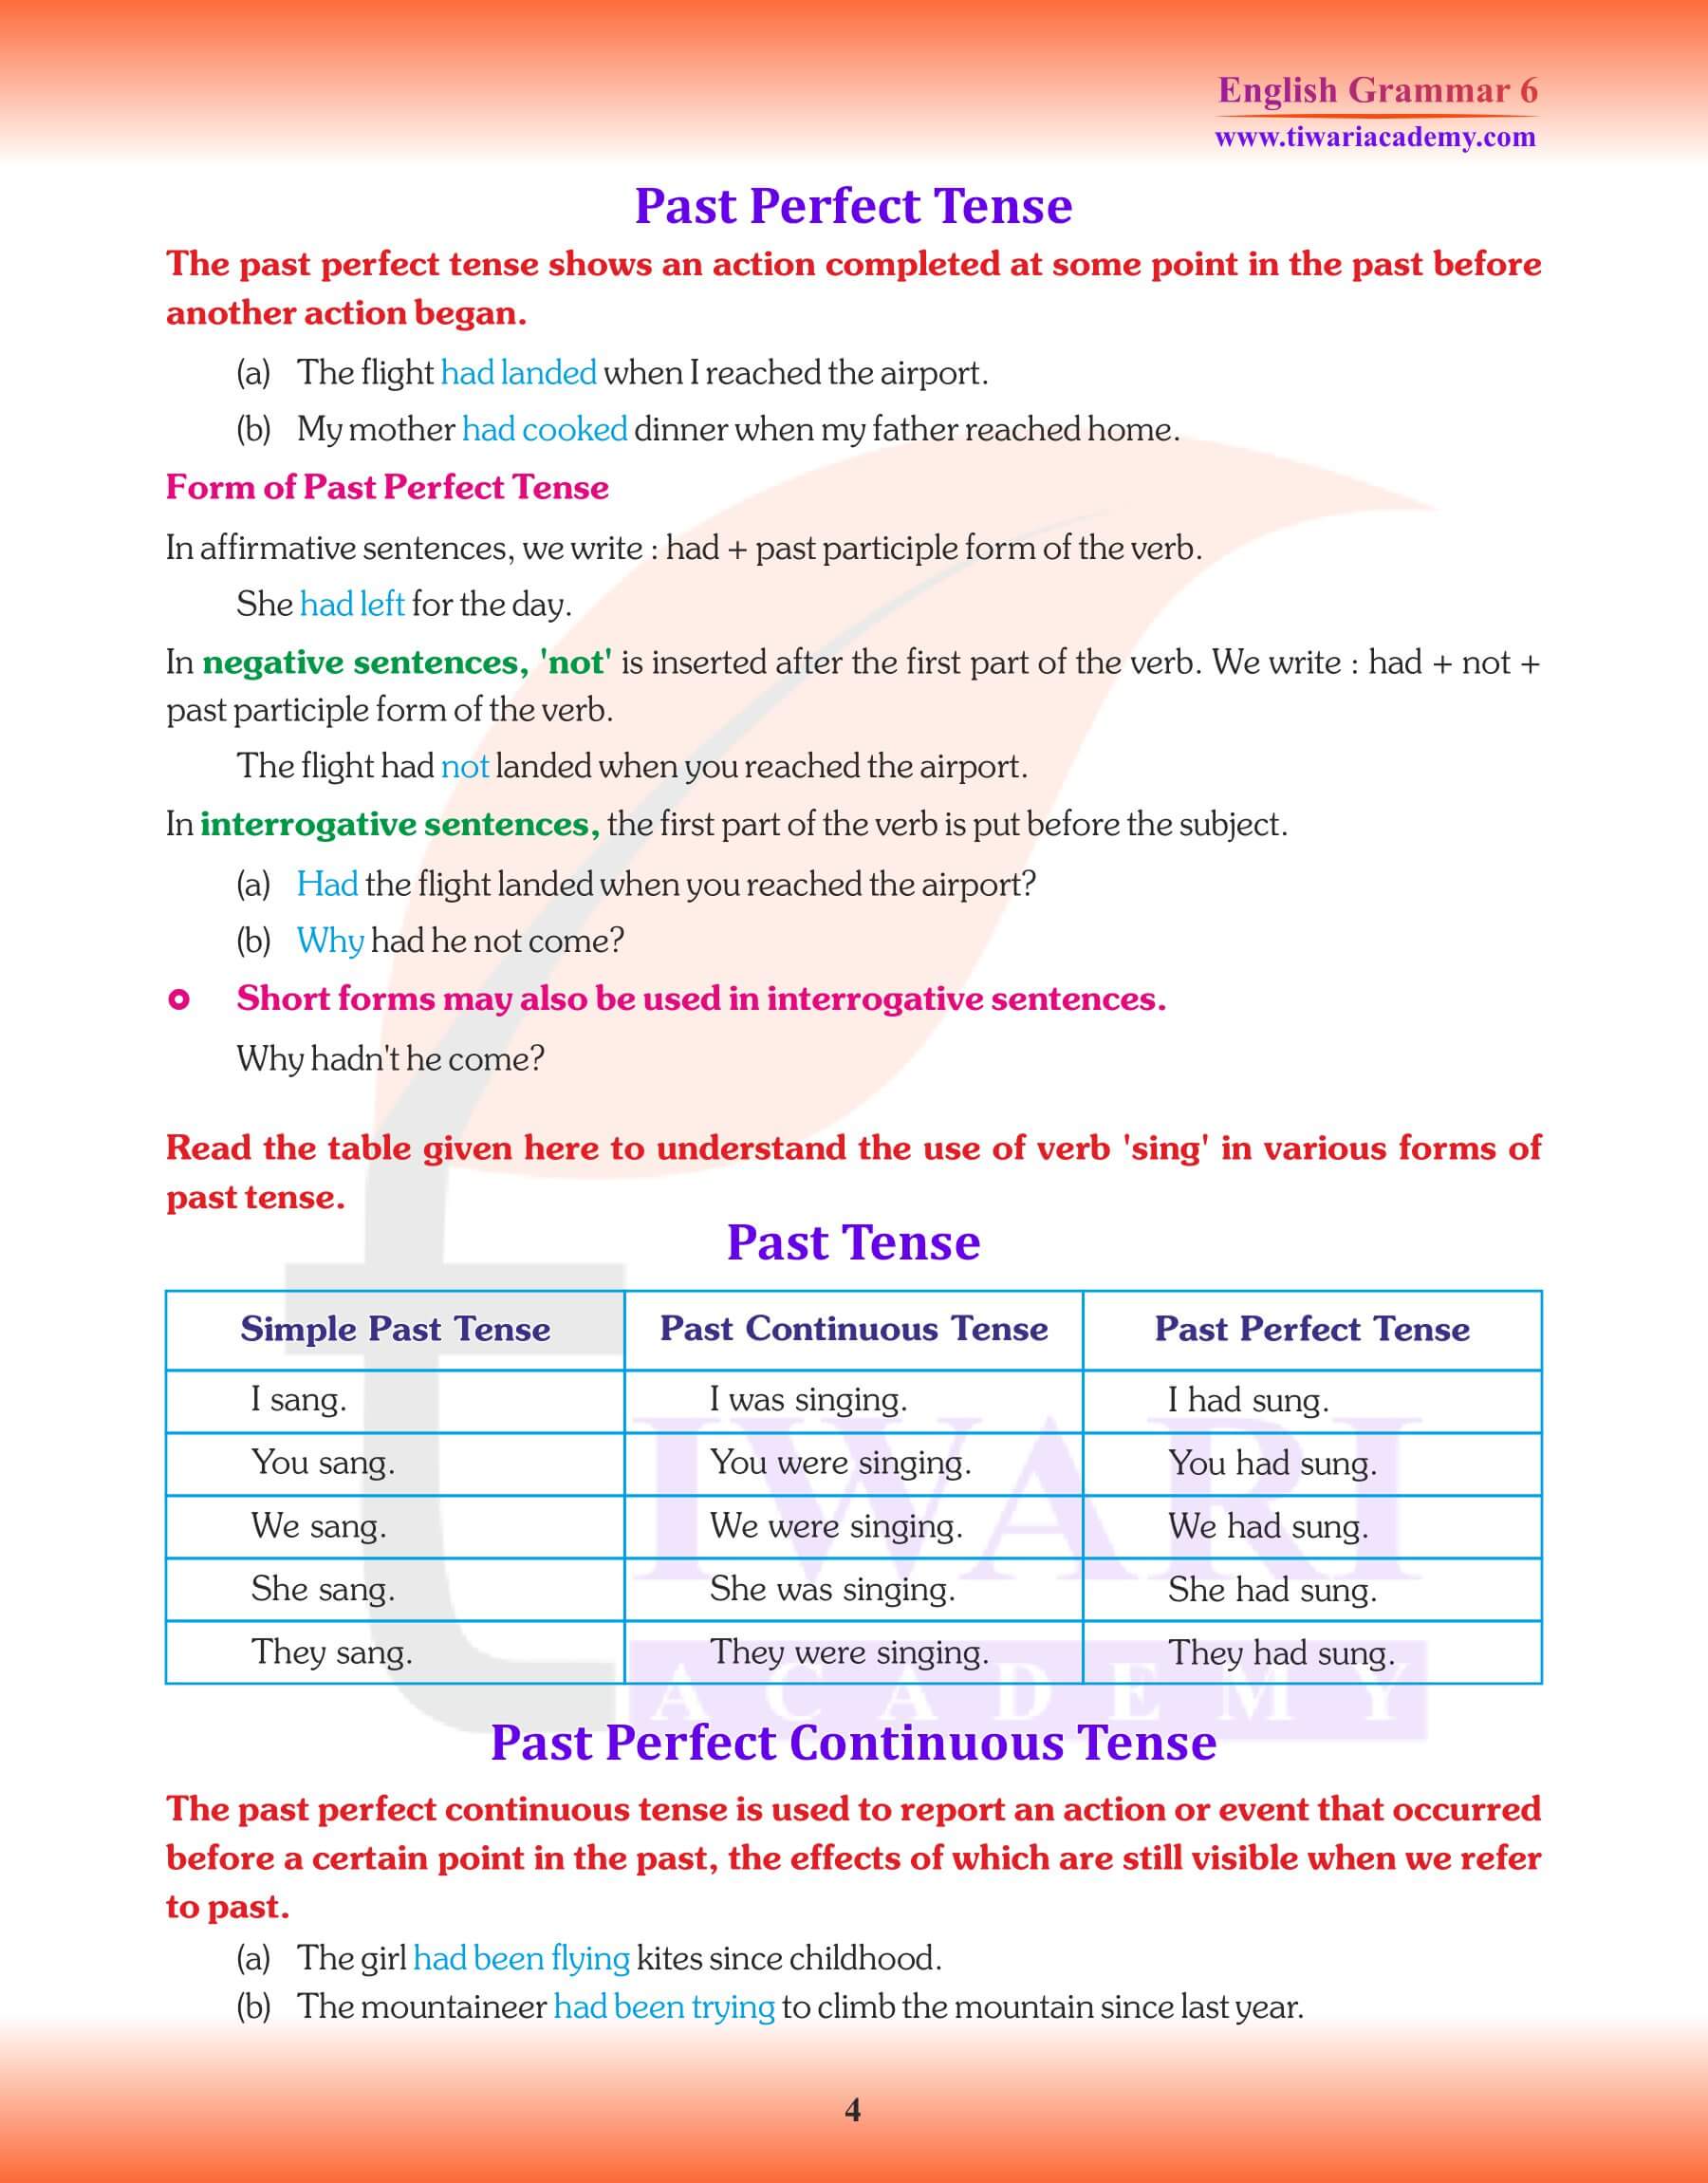 Class 6 Grammar Perfect Tense assignments